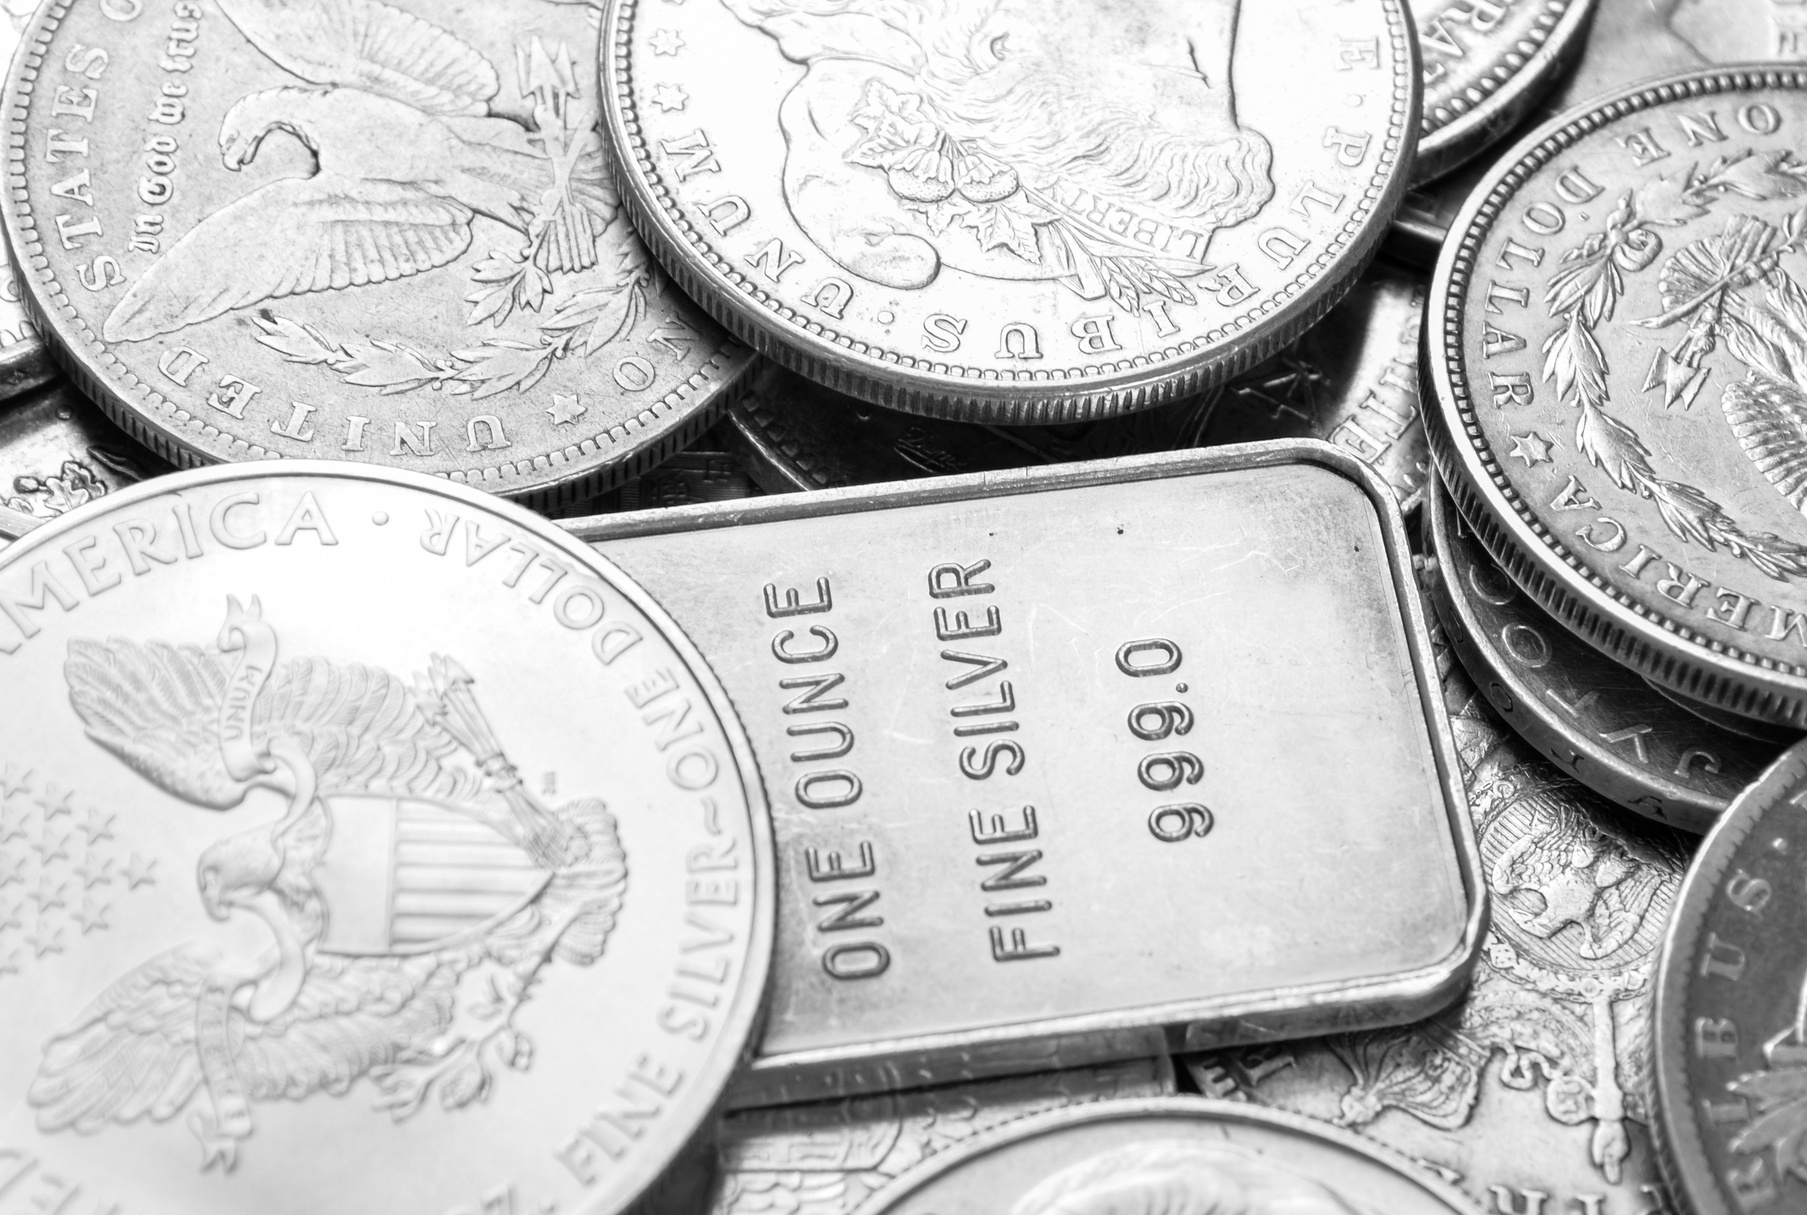 Silver coins and bars macro shot